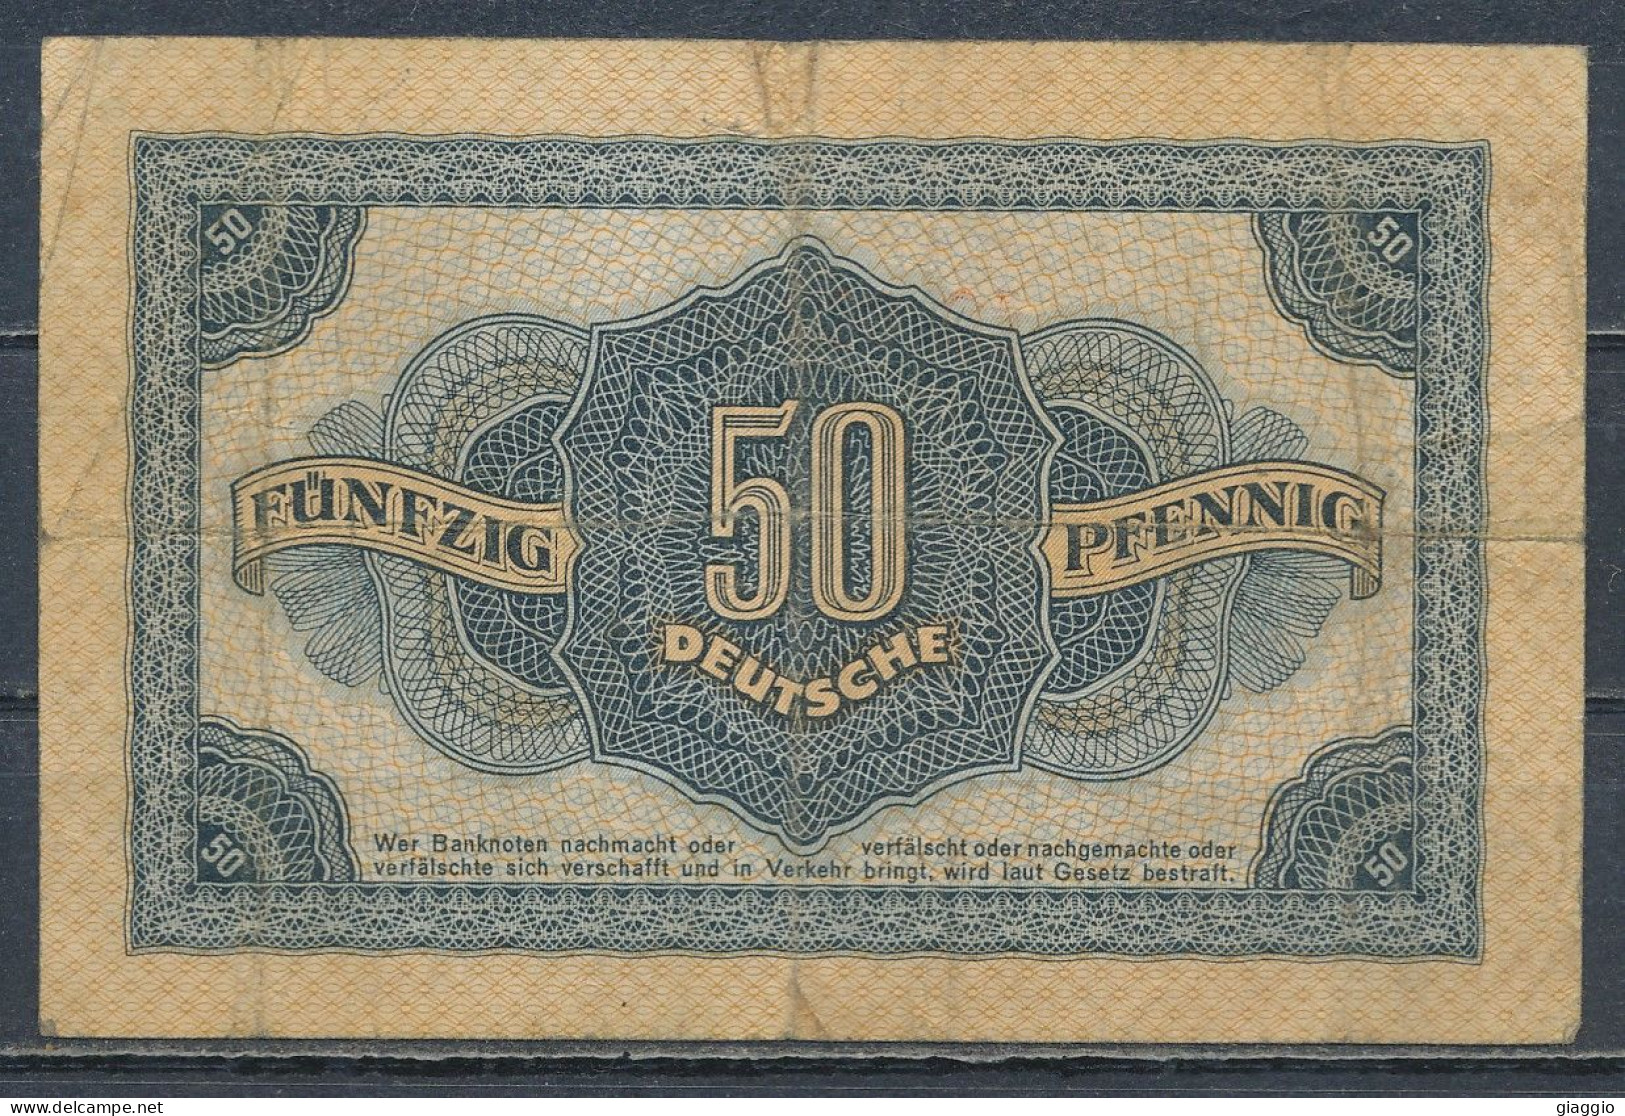 °°° GERMANY DDR 50 PFENNIG 1948 °°° - 50 Deutsche Pfennig